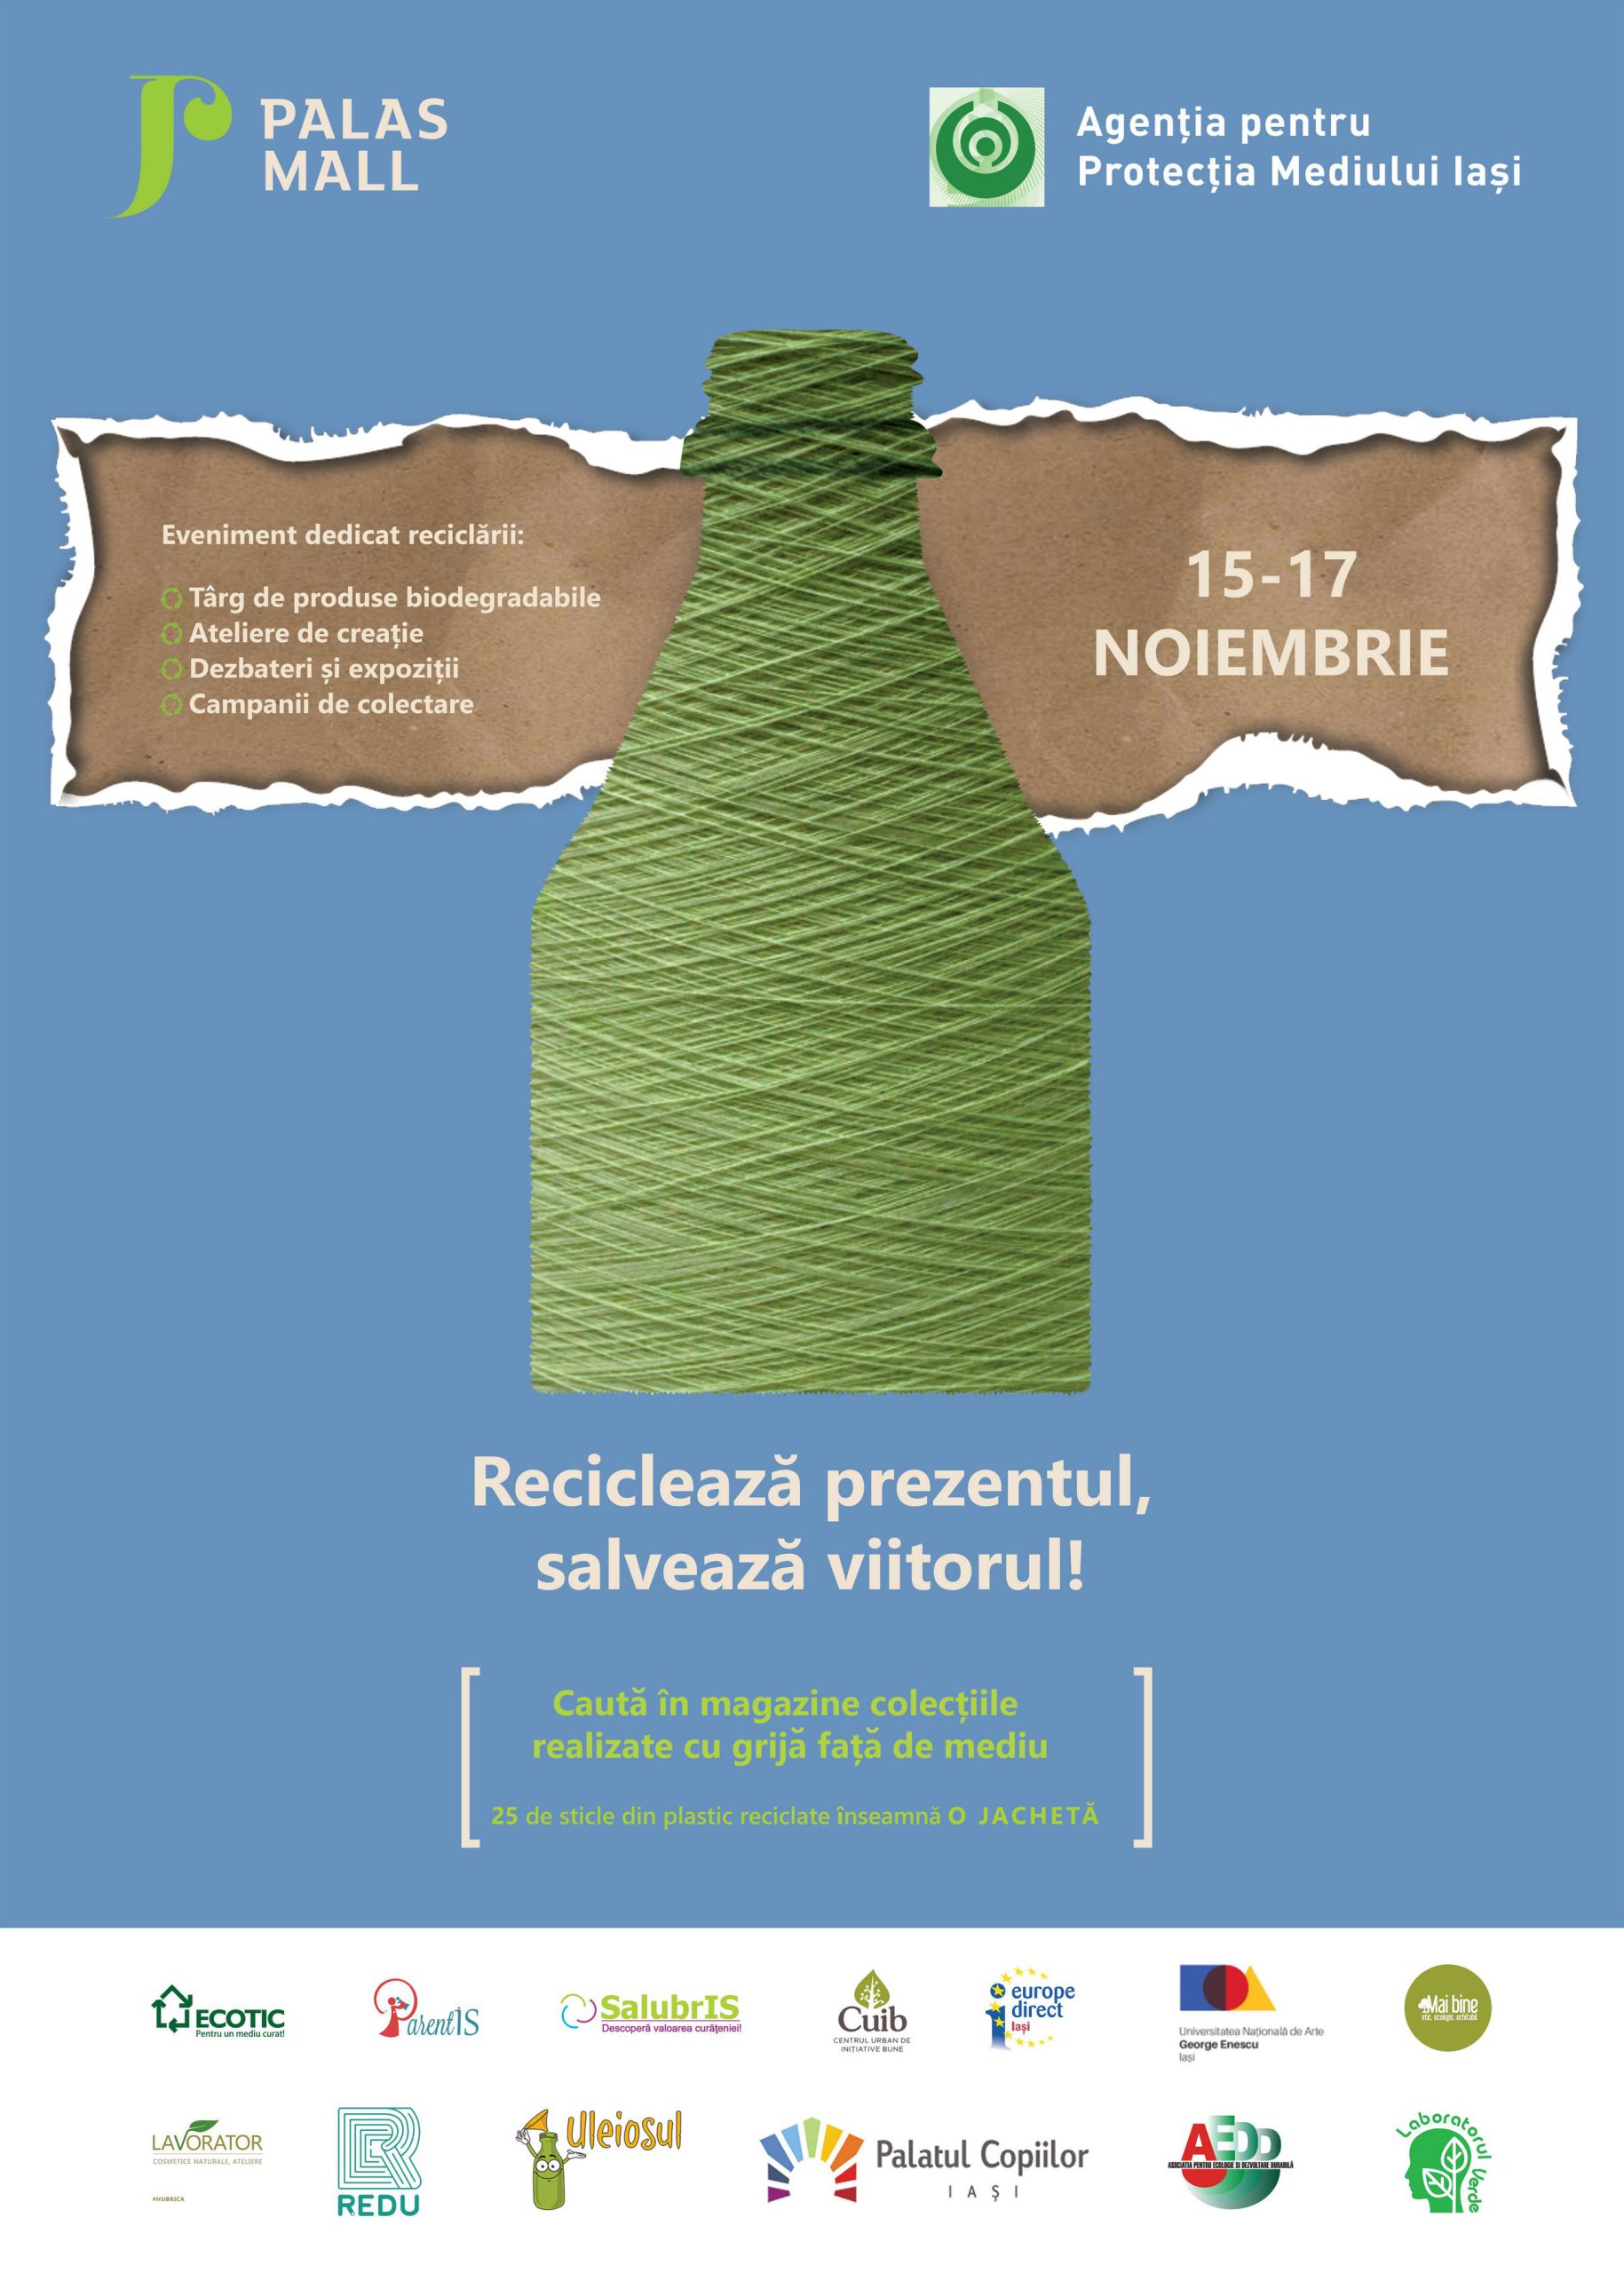  Trei zile dedicate mediului, la Palas: ateliere şi dezbateri despre ecologie şi expoziţii cu materiale reciclate